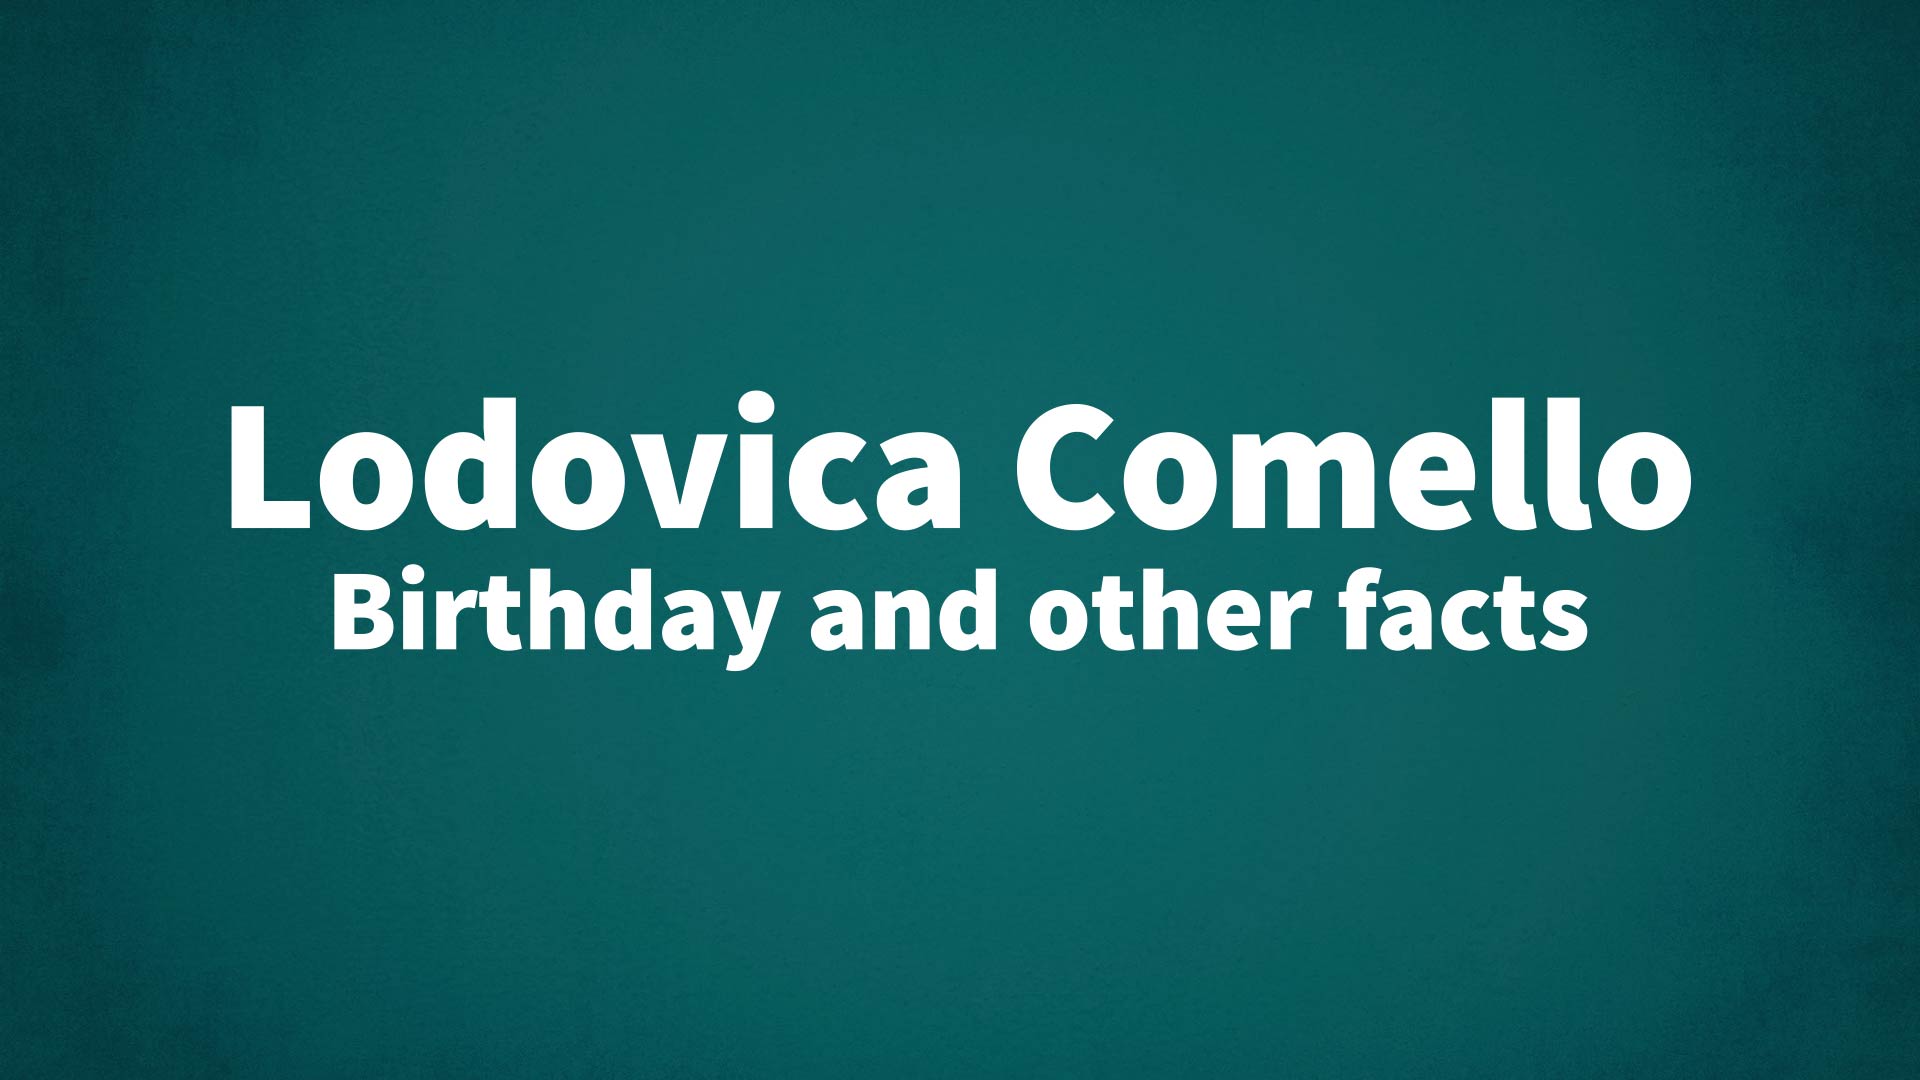 title image for Lodovica Comello birthday